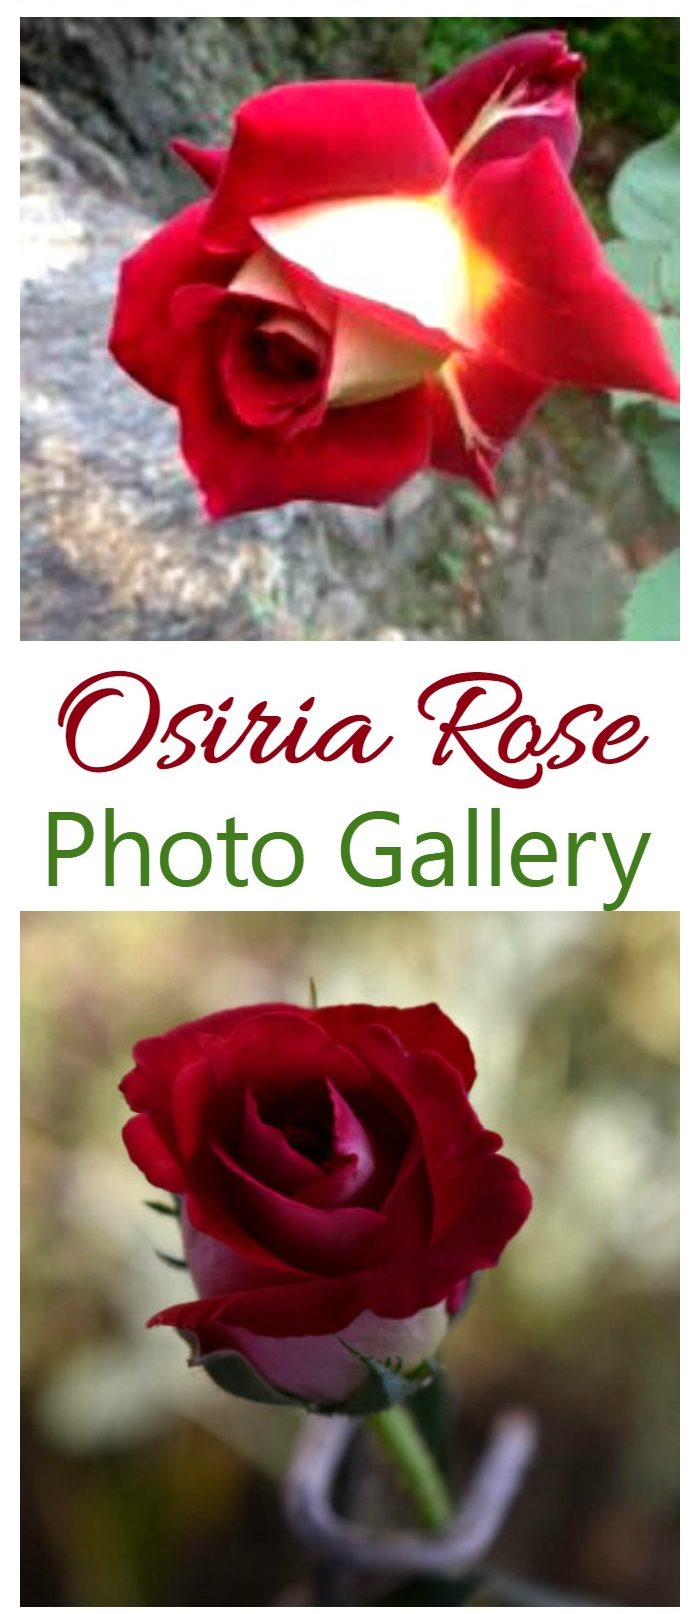 Galeria de fotos d'Osiria Rose d'aquesta rosa de te híbrida difícil de trobar